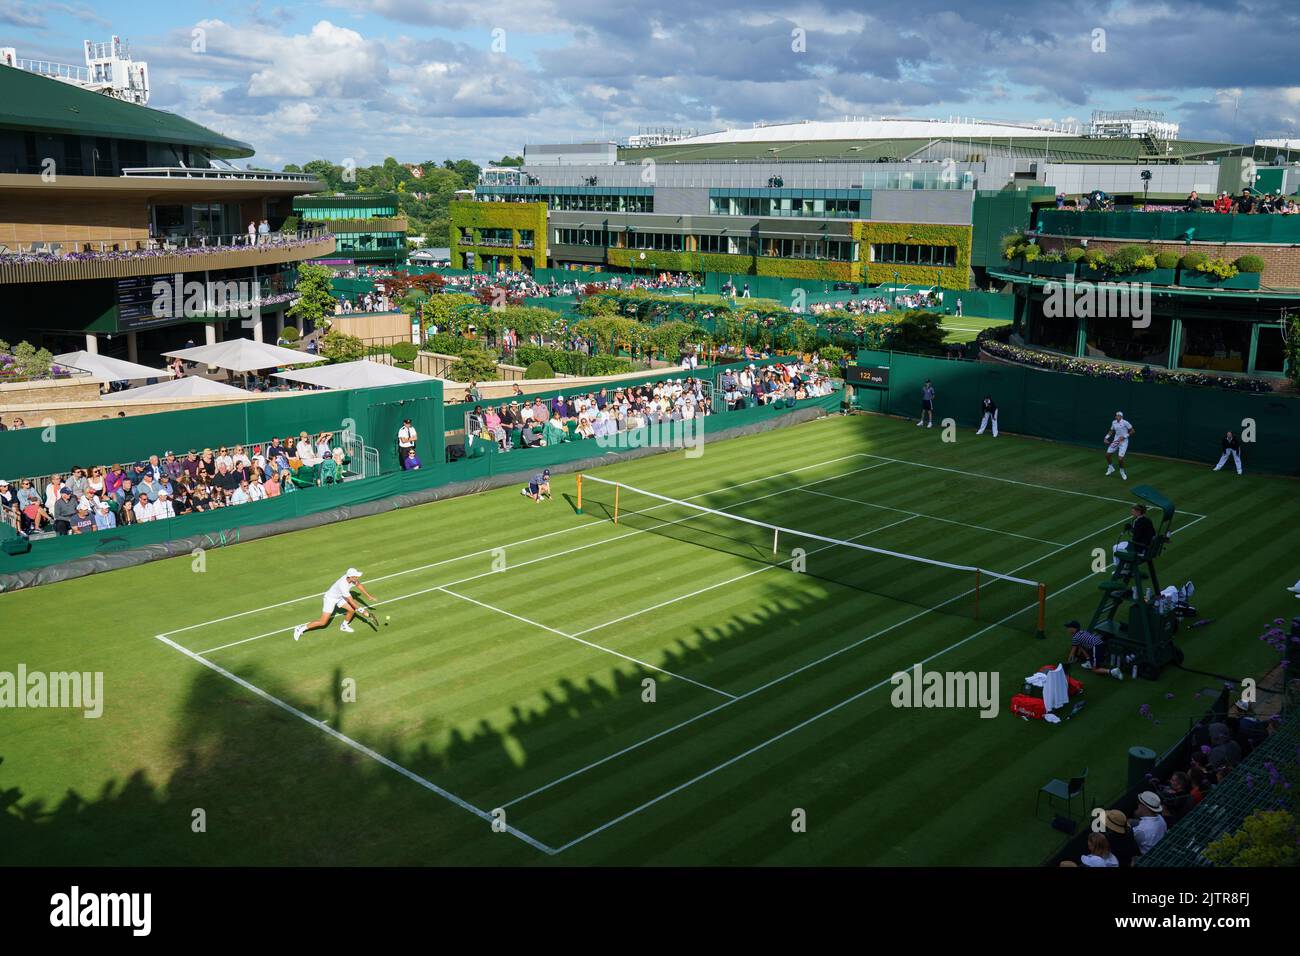 Allgemeine Ansichten von Court 18 mit Enzo Couacaud und John isner bei den Meisterschaften 2022. Im All England Lawn Tennis Club, Wimbledon. Stockfoto